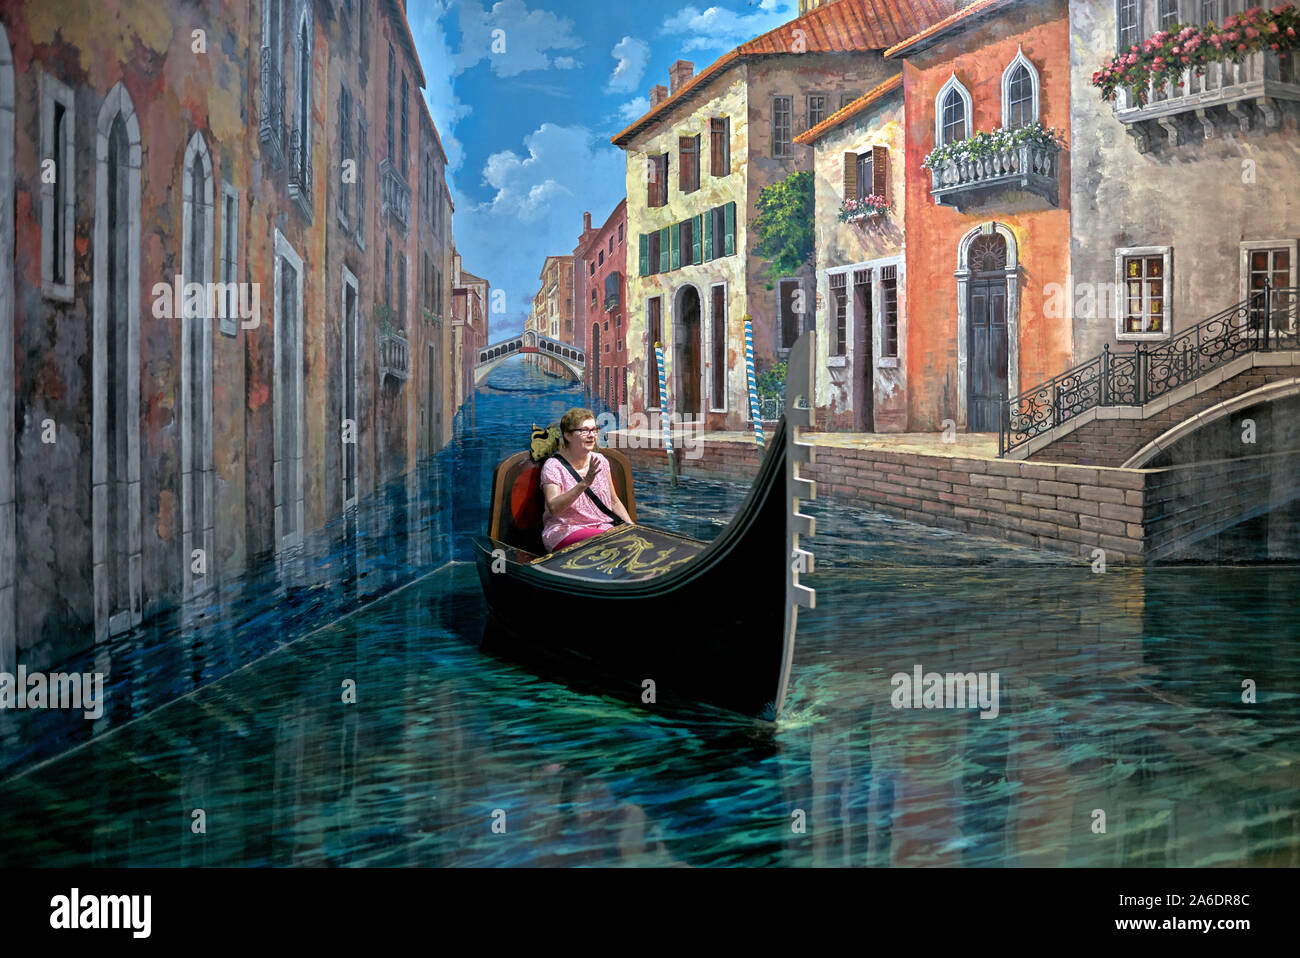 Peinture 3D et art trick d'une scène de canal de Venise Avec télécabine au musée d'art parody Pattaya Thaïlande Asie du Sud-est Banque D'Images